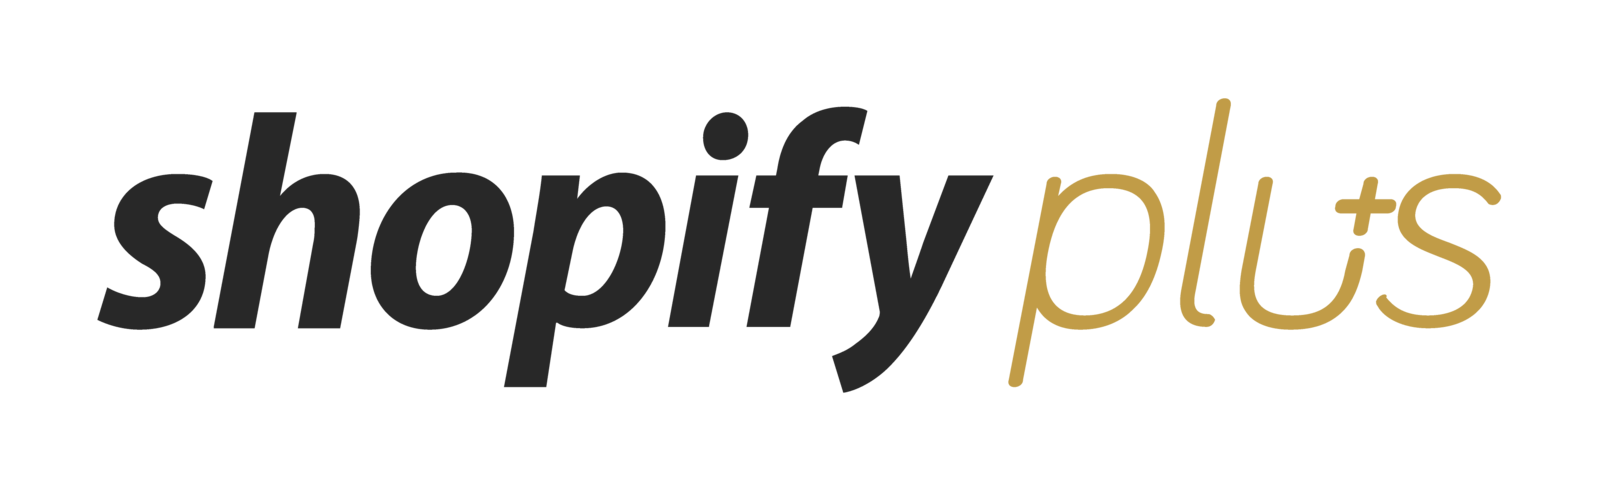 Ggole Plus Review Logo - Shopify Plus Review 2019 | Reviews, Ratings, Complaints